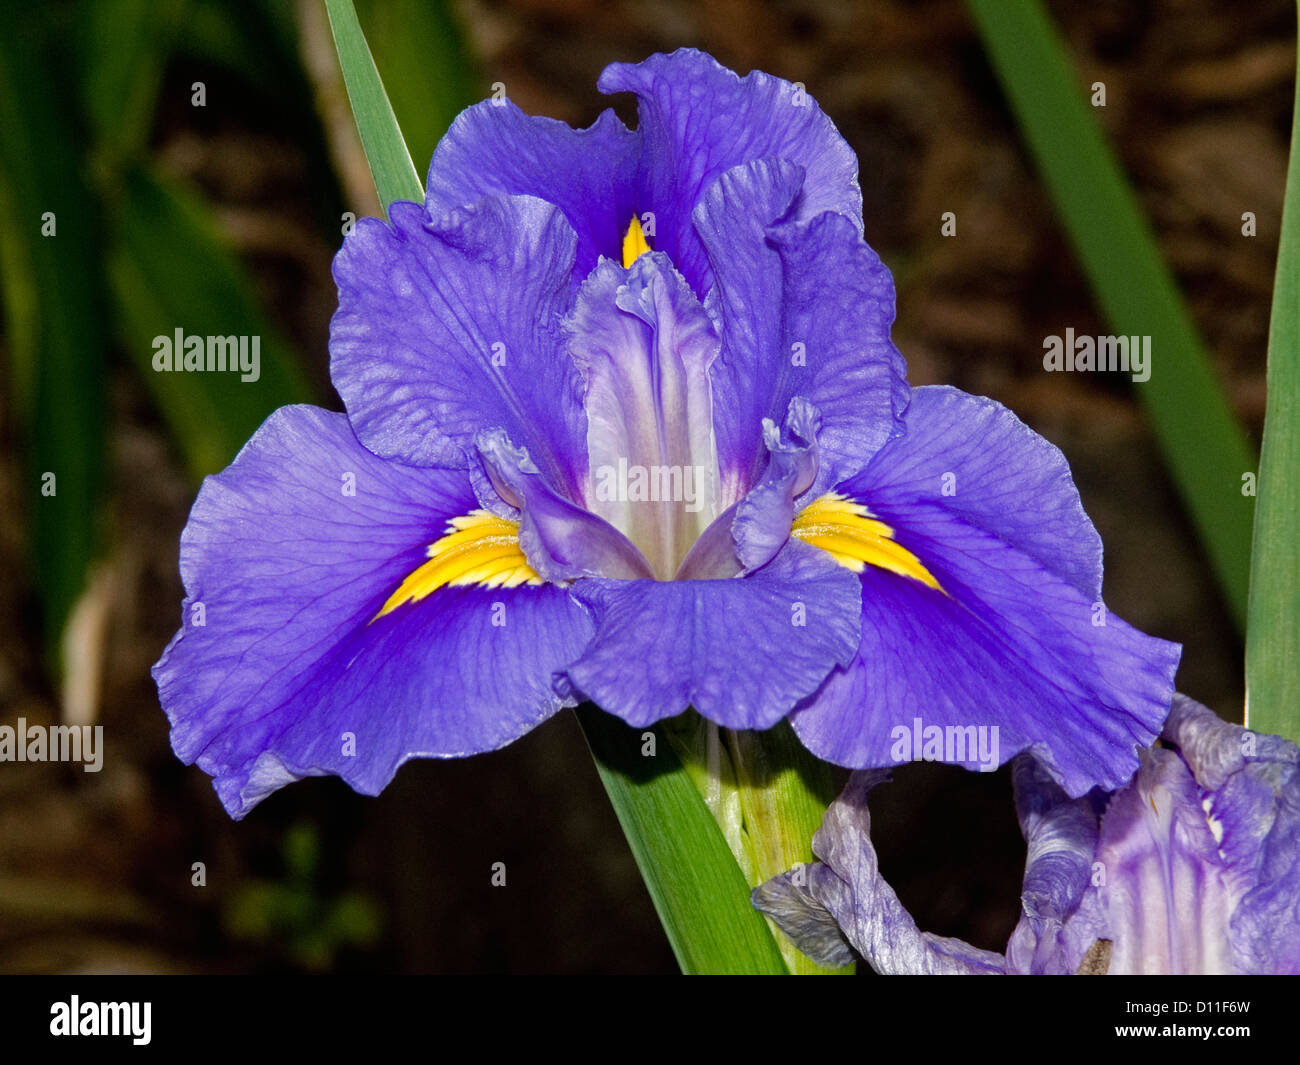 Louisiane - iris violet vif et jaune à fleurs et feuillages Photo Stock -  Alamy